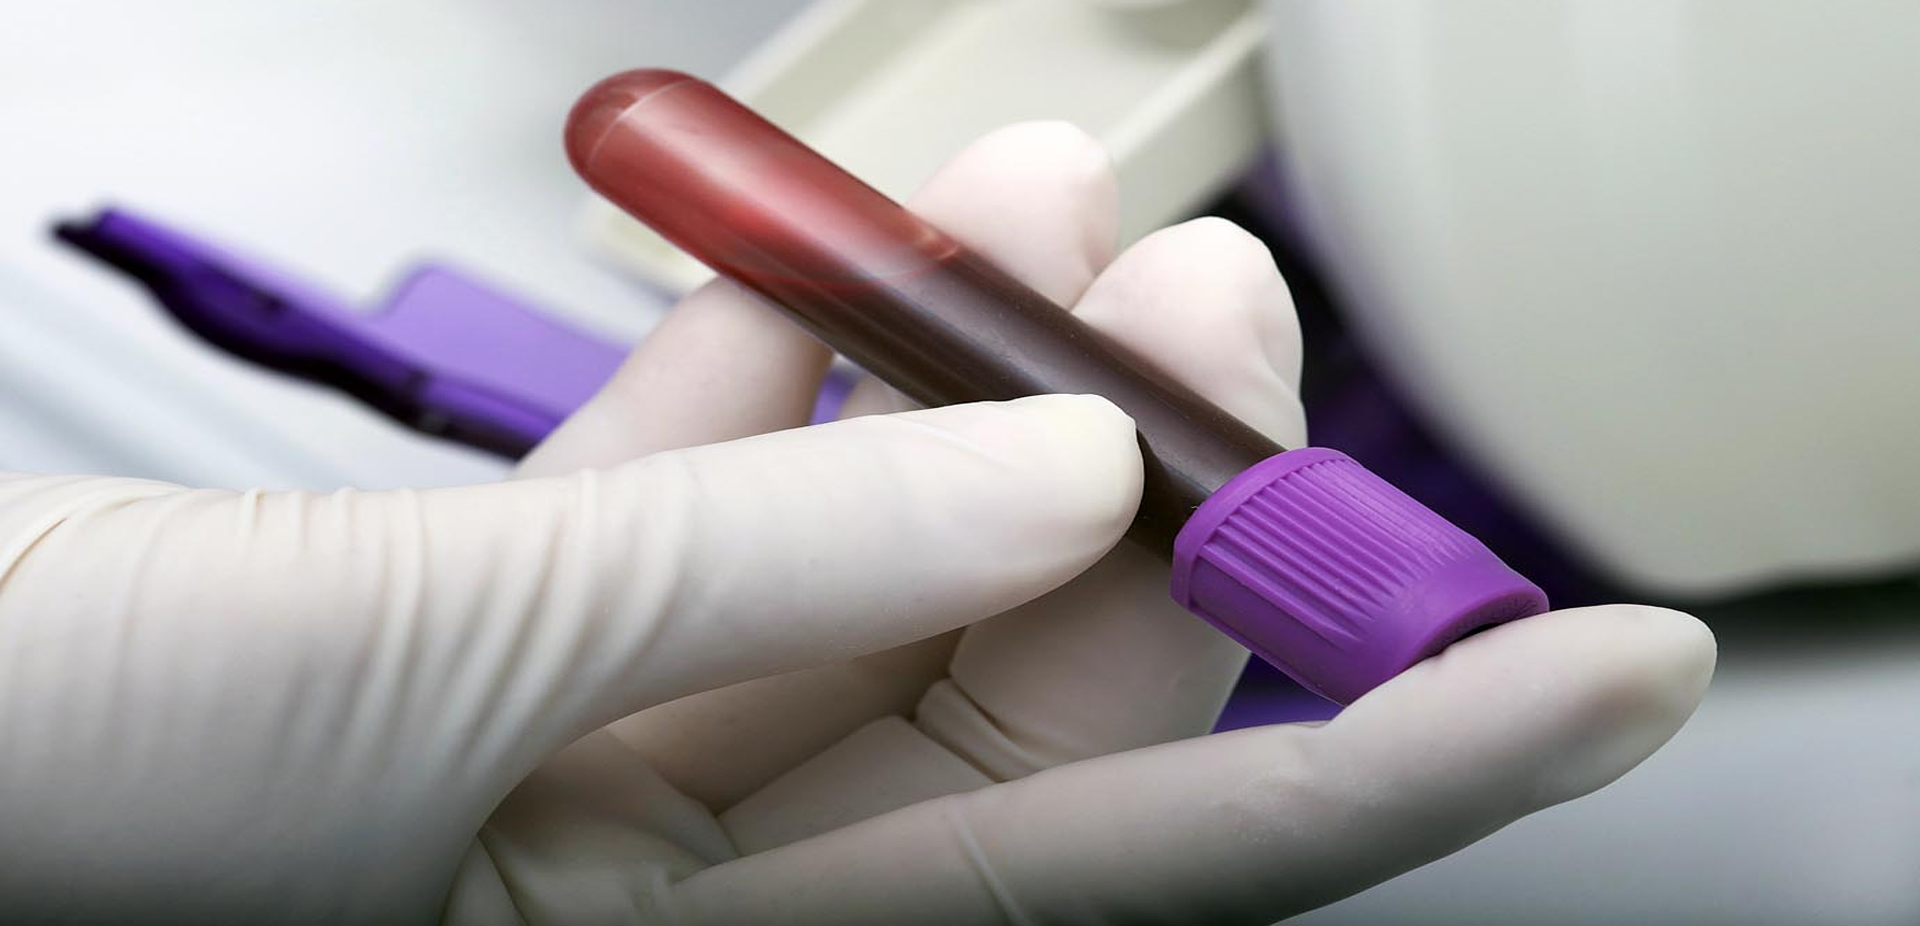 Exame de sangue pode ajuda no diagnóstico precoce de câncer de mama, aponta estudo